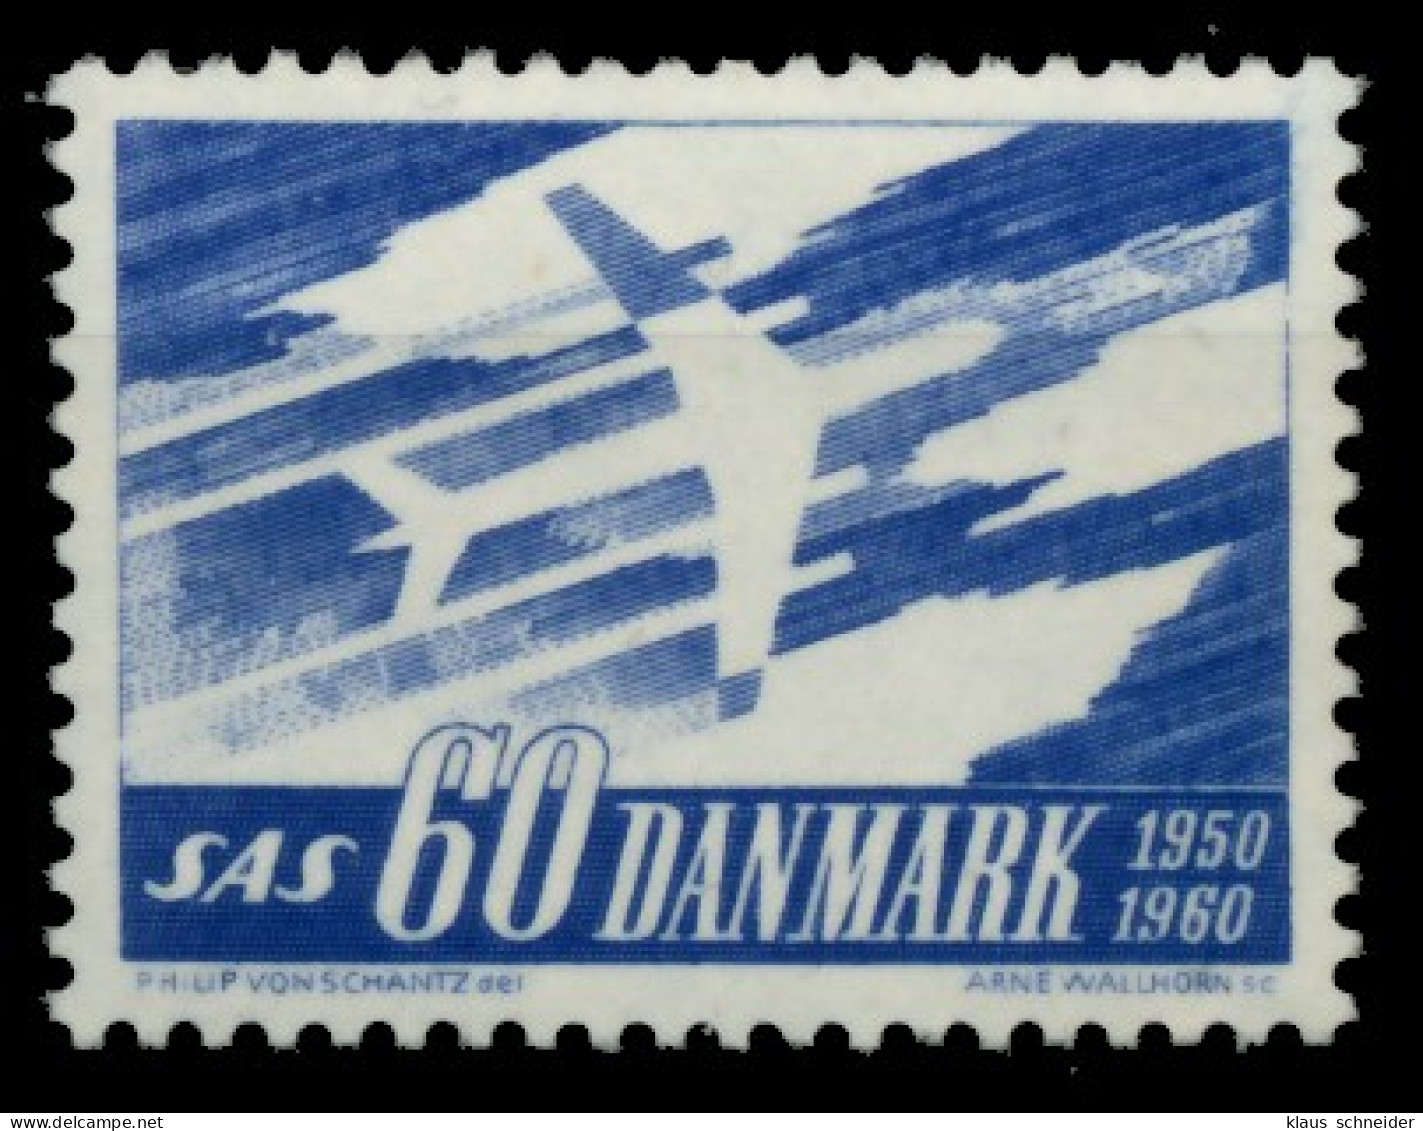 DÄNEMARK 1961 Nr 388x Postfrisch SAFF19E - Ongebruikt